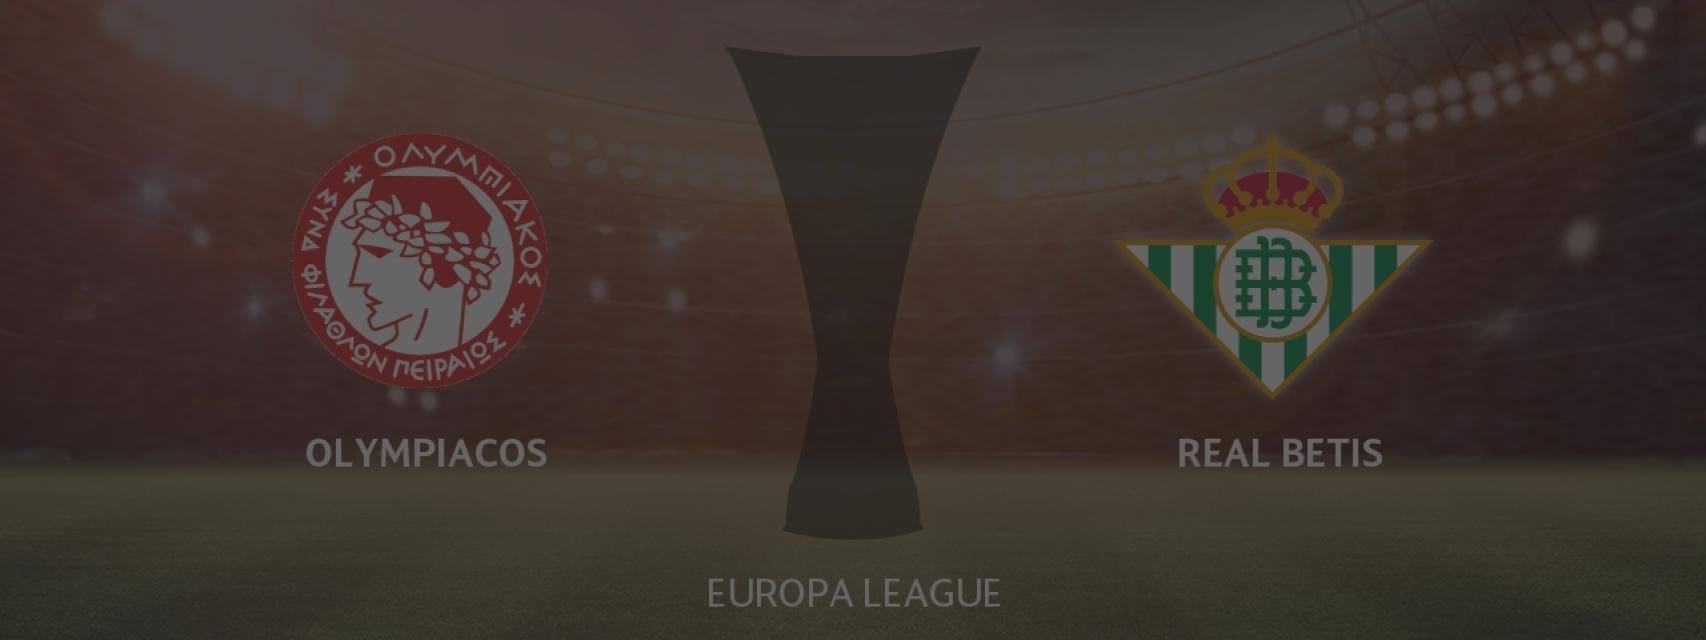 Olympiacos - Real Betis, siga en directo el partido de la Europa League